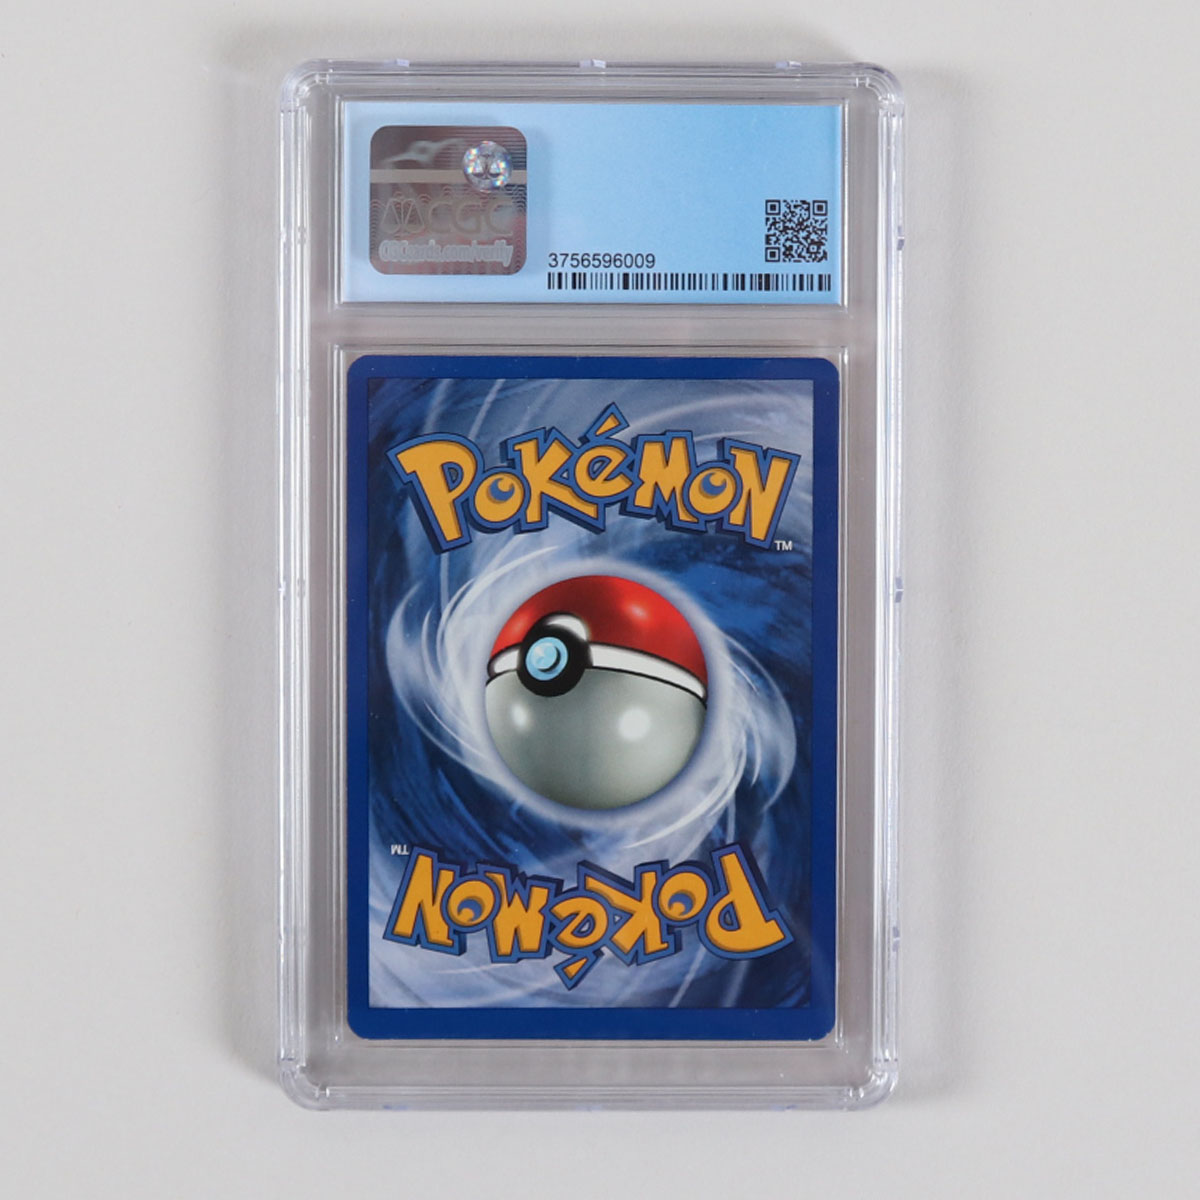 1999 Pokemon Gengar Graded Card Fossil